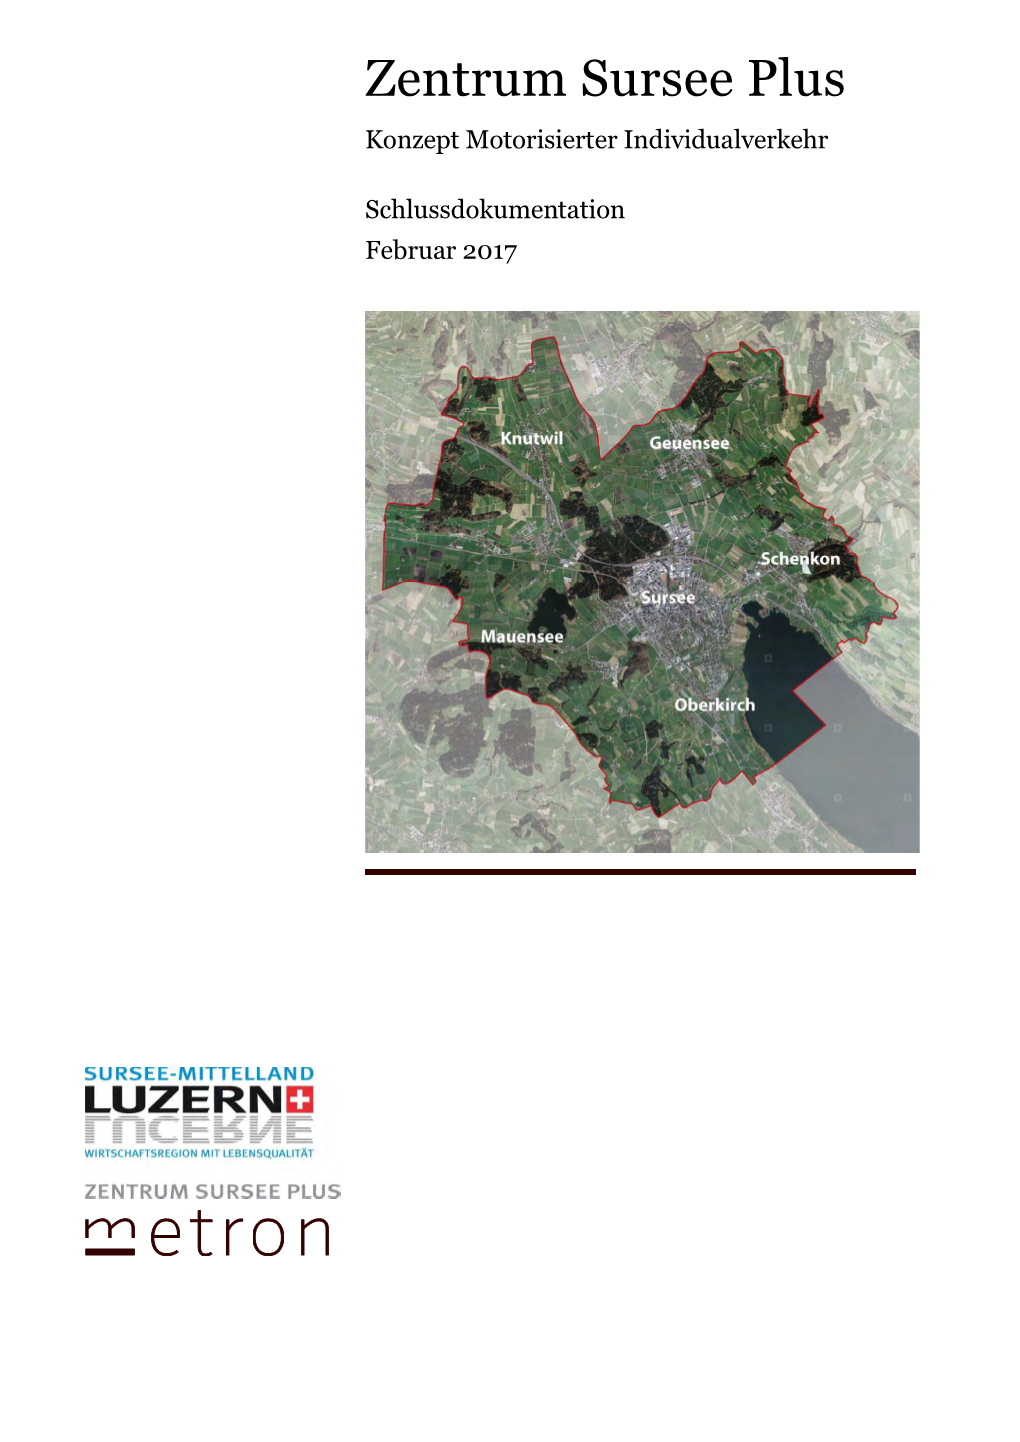 MIV-Konzept Sursee Plus (Bauprogramm 2019 – 2022) Eigene Darstellung Metron, 2016